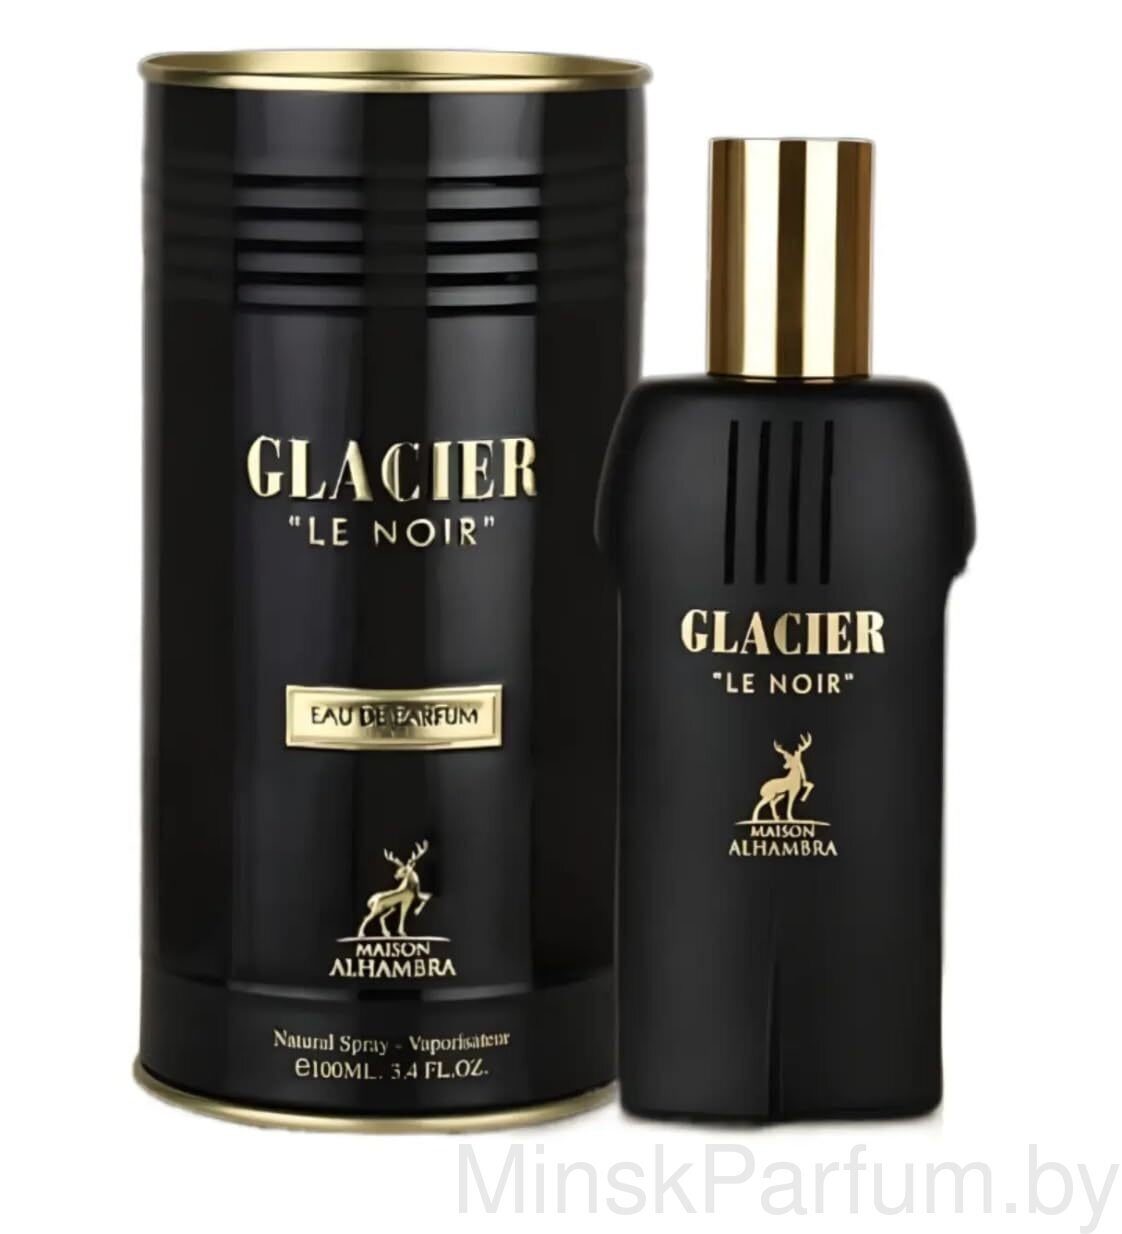 Maison Alhambra Glacier Le Noir For Men edp 100 ml